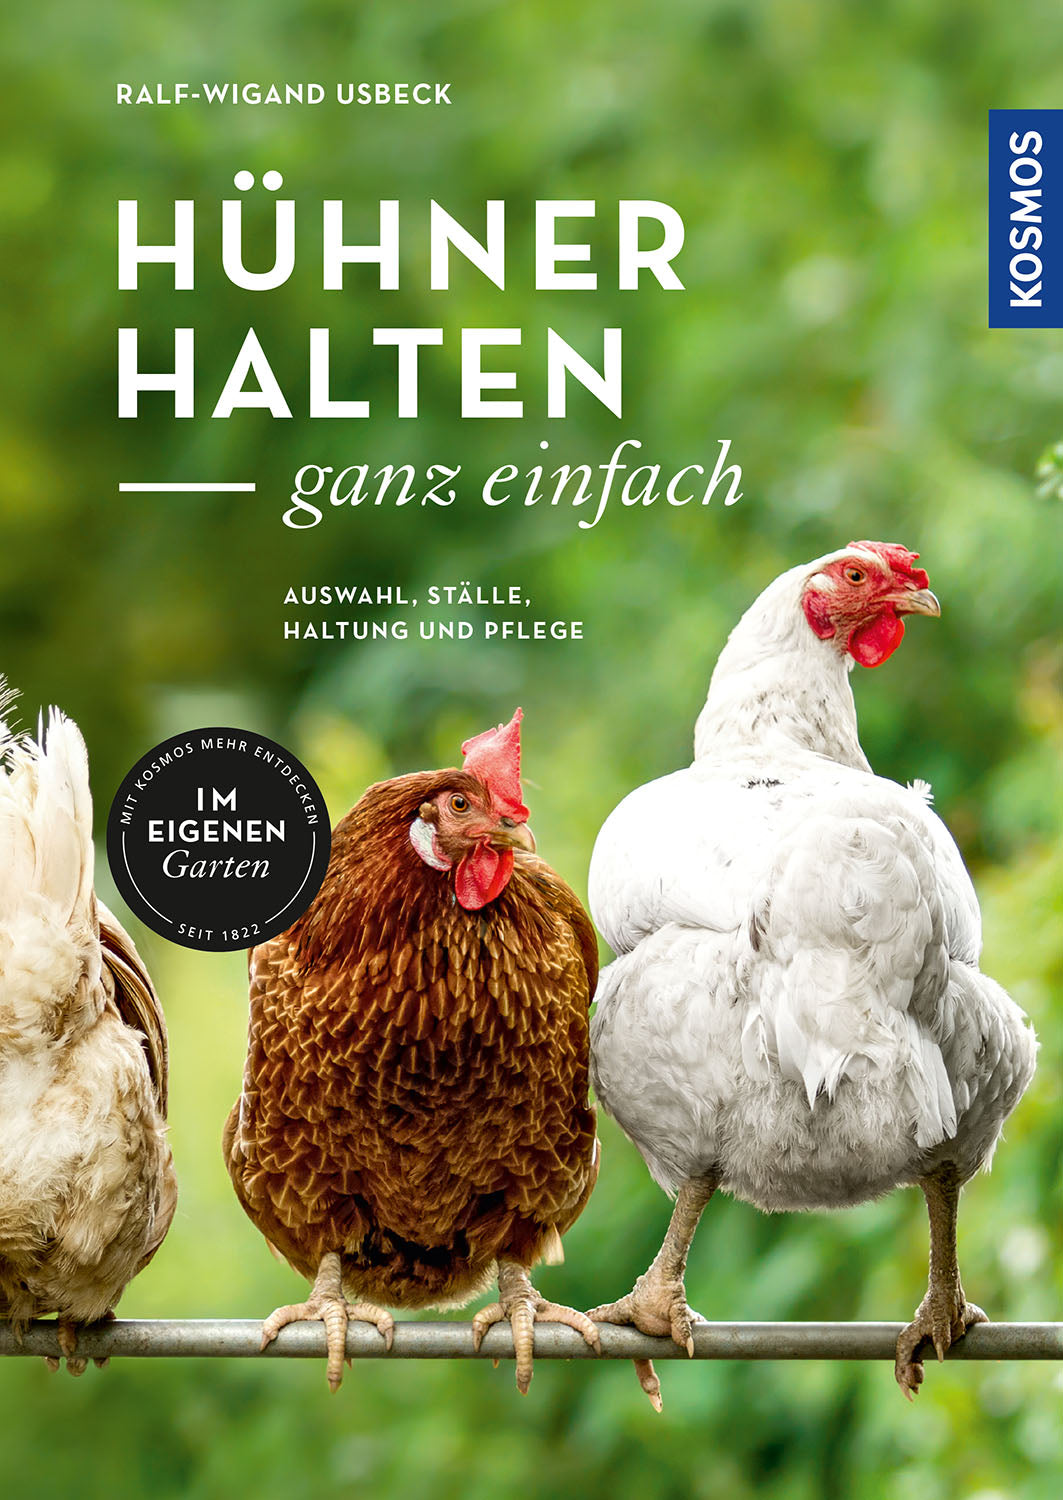 Hühner halten - ganz einfach (Kosmos-Verlag)